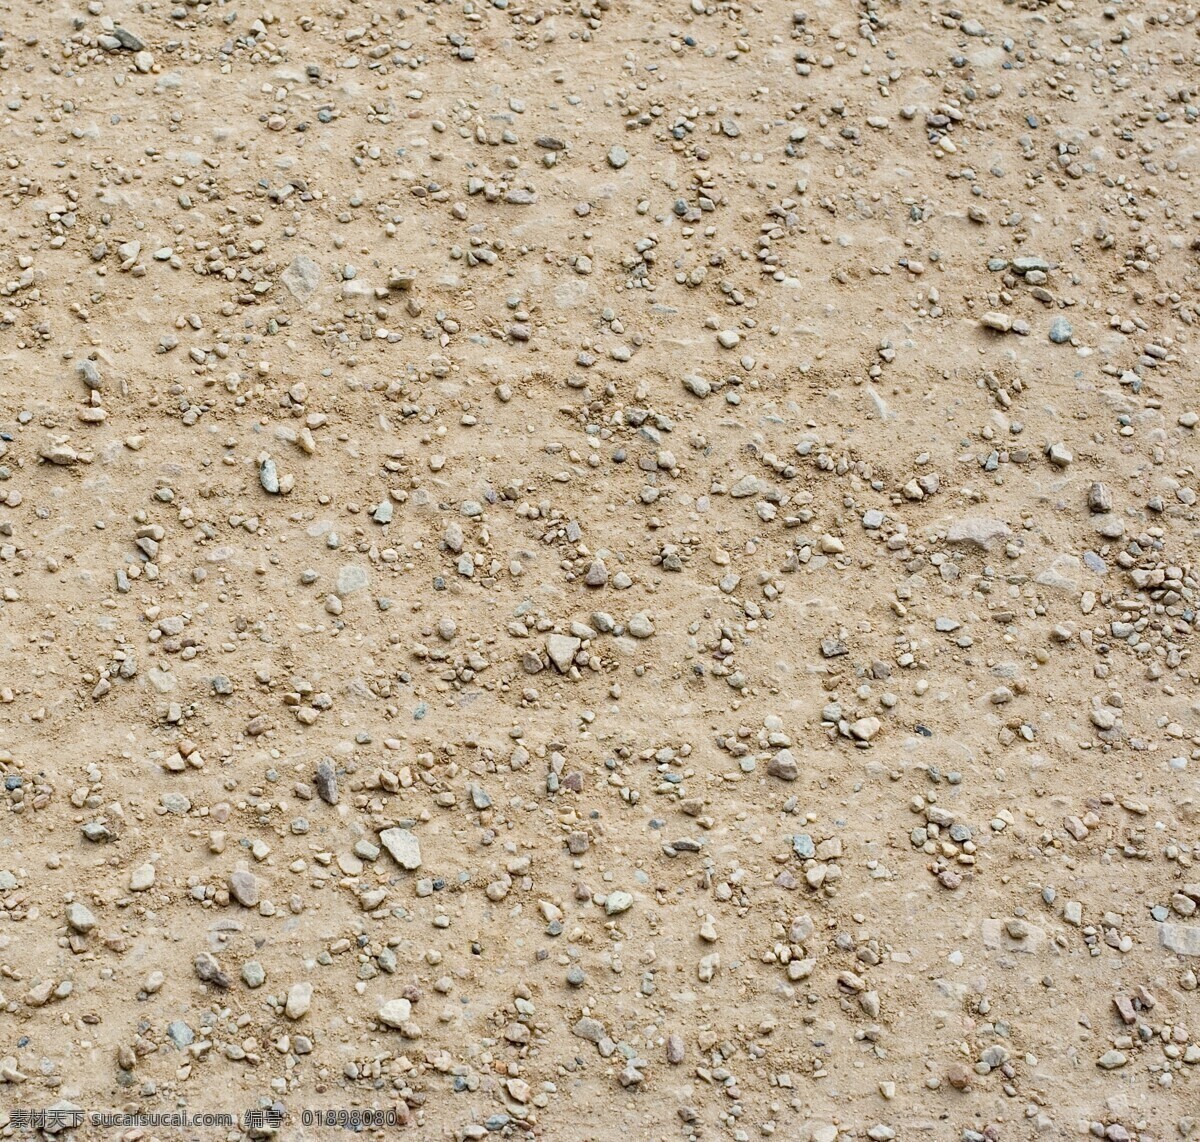 沙漠砂砾贴图 沙漠 沙地 砂砾 沙子 贴图 地面贴图 自然景观